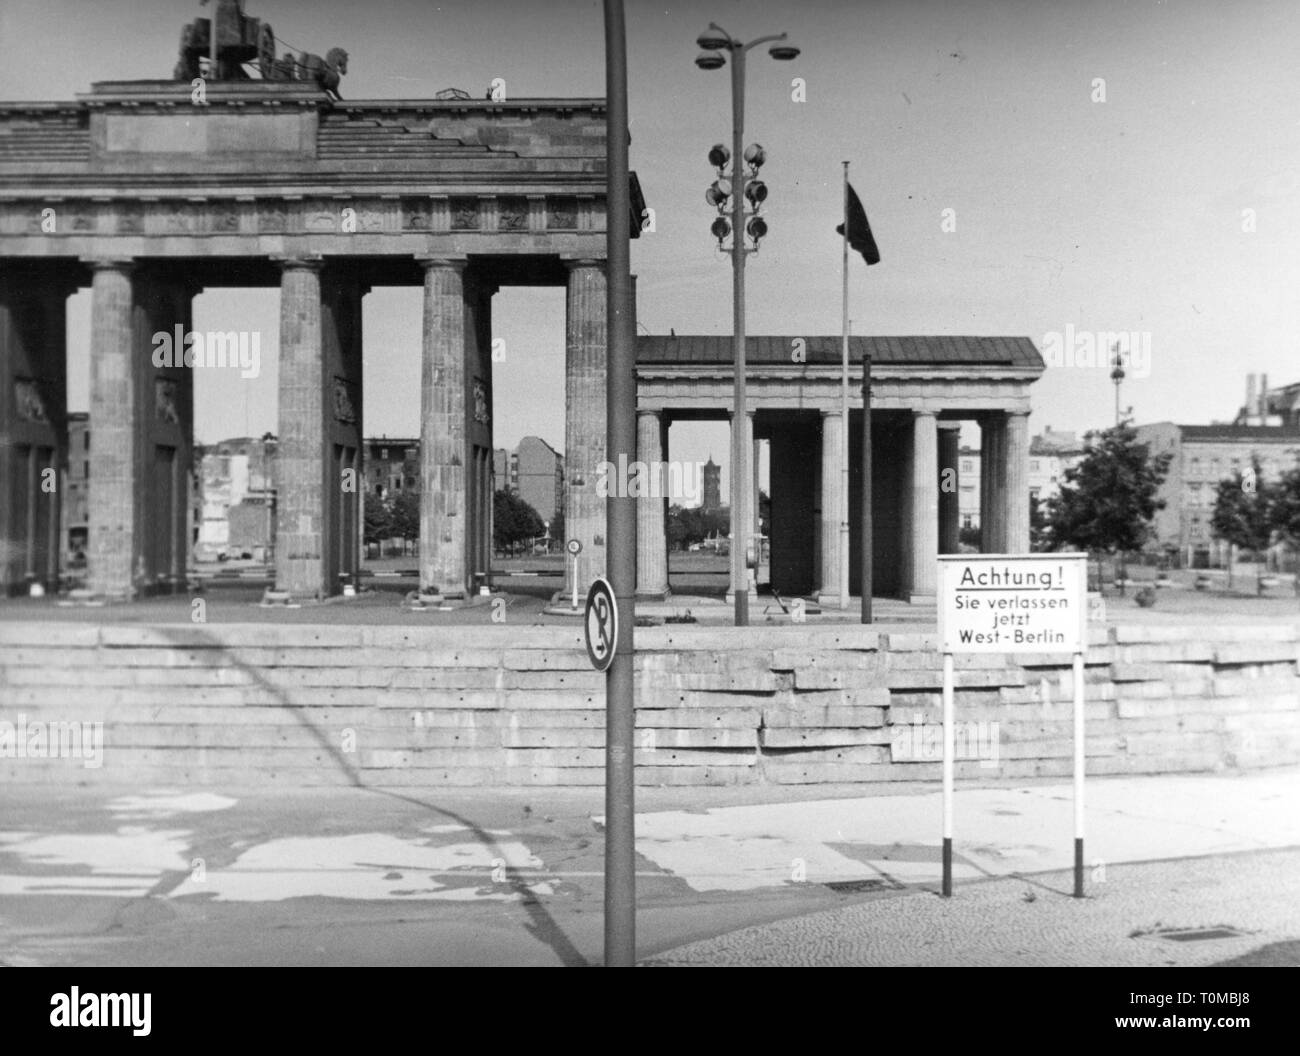 Geographie/Reisen, Deutschland, Berlin, Brandenburger Tor, Westseite, Schild "Achtung! Sie verlassen jetzt West-Berlin", 4.9.1962, Additional-Rights - Clearance-Info - Not-Available Stockfoto